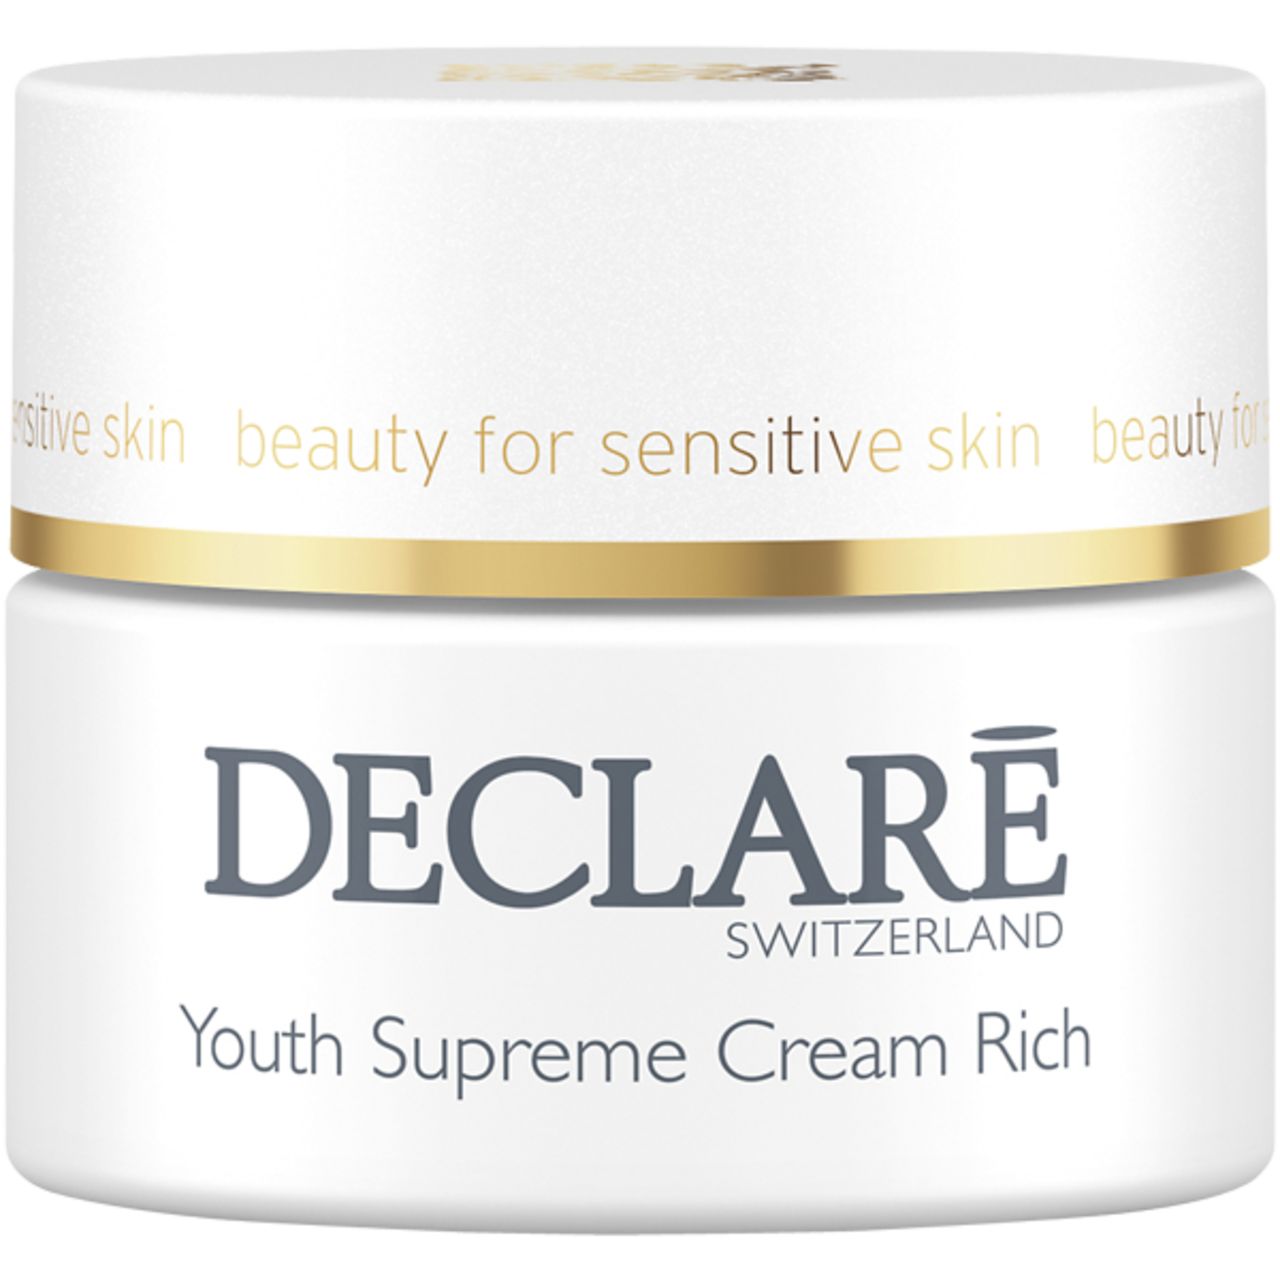 Declare Youth Supreme Cream Rich